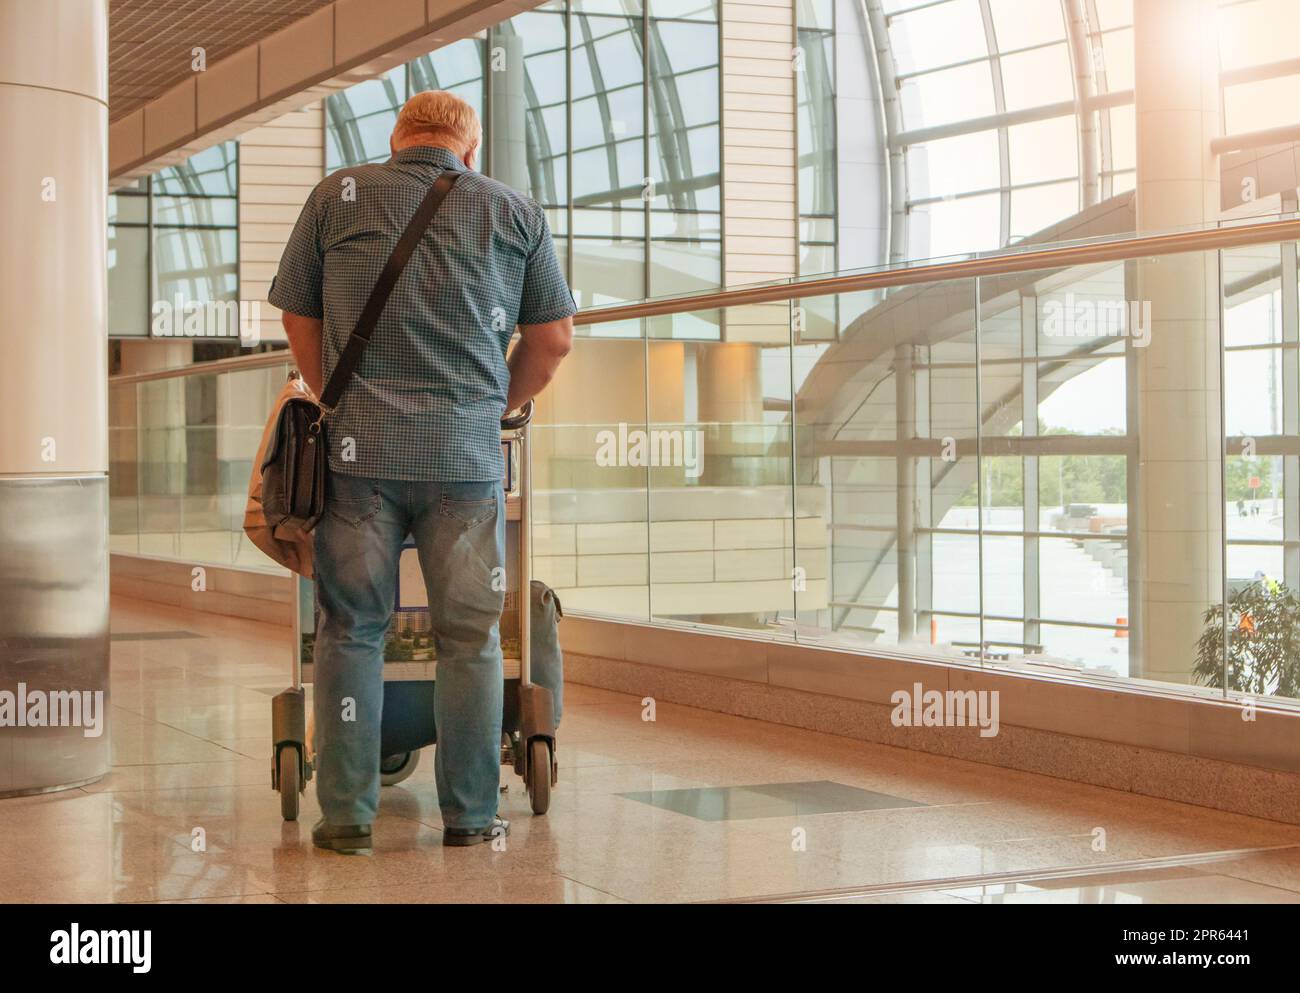 Una figura de cuerpo entero de un hombre en jeans azules y una camisa, con un carrito de equipaje, en el fondo del interior del aeropuerto, una copia del espacio a la derecha Foto de stock